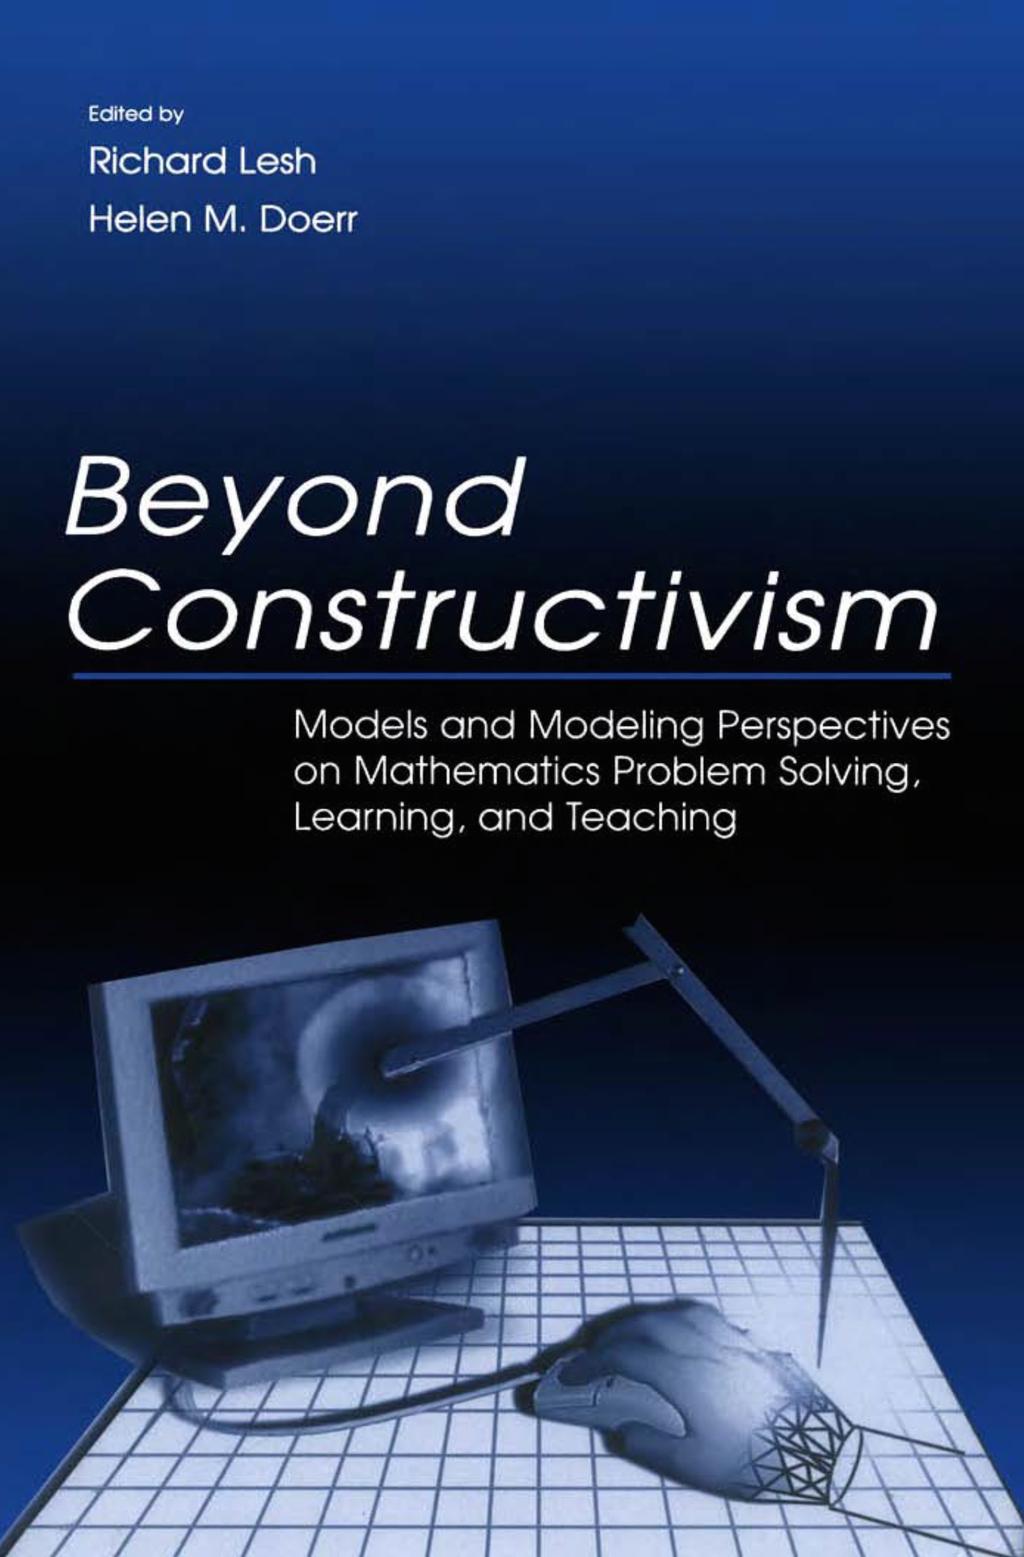 Ett modell- och modellerings perspektiv på lärande och undervisning i matematik Dienes multiple embodiment principle Papert konstruktionism Piaget